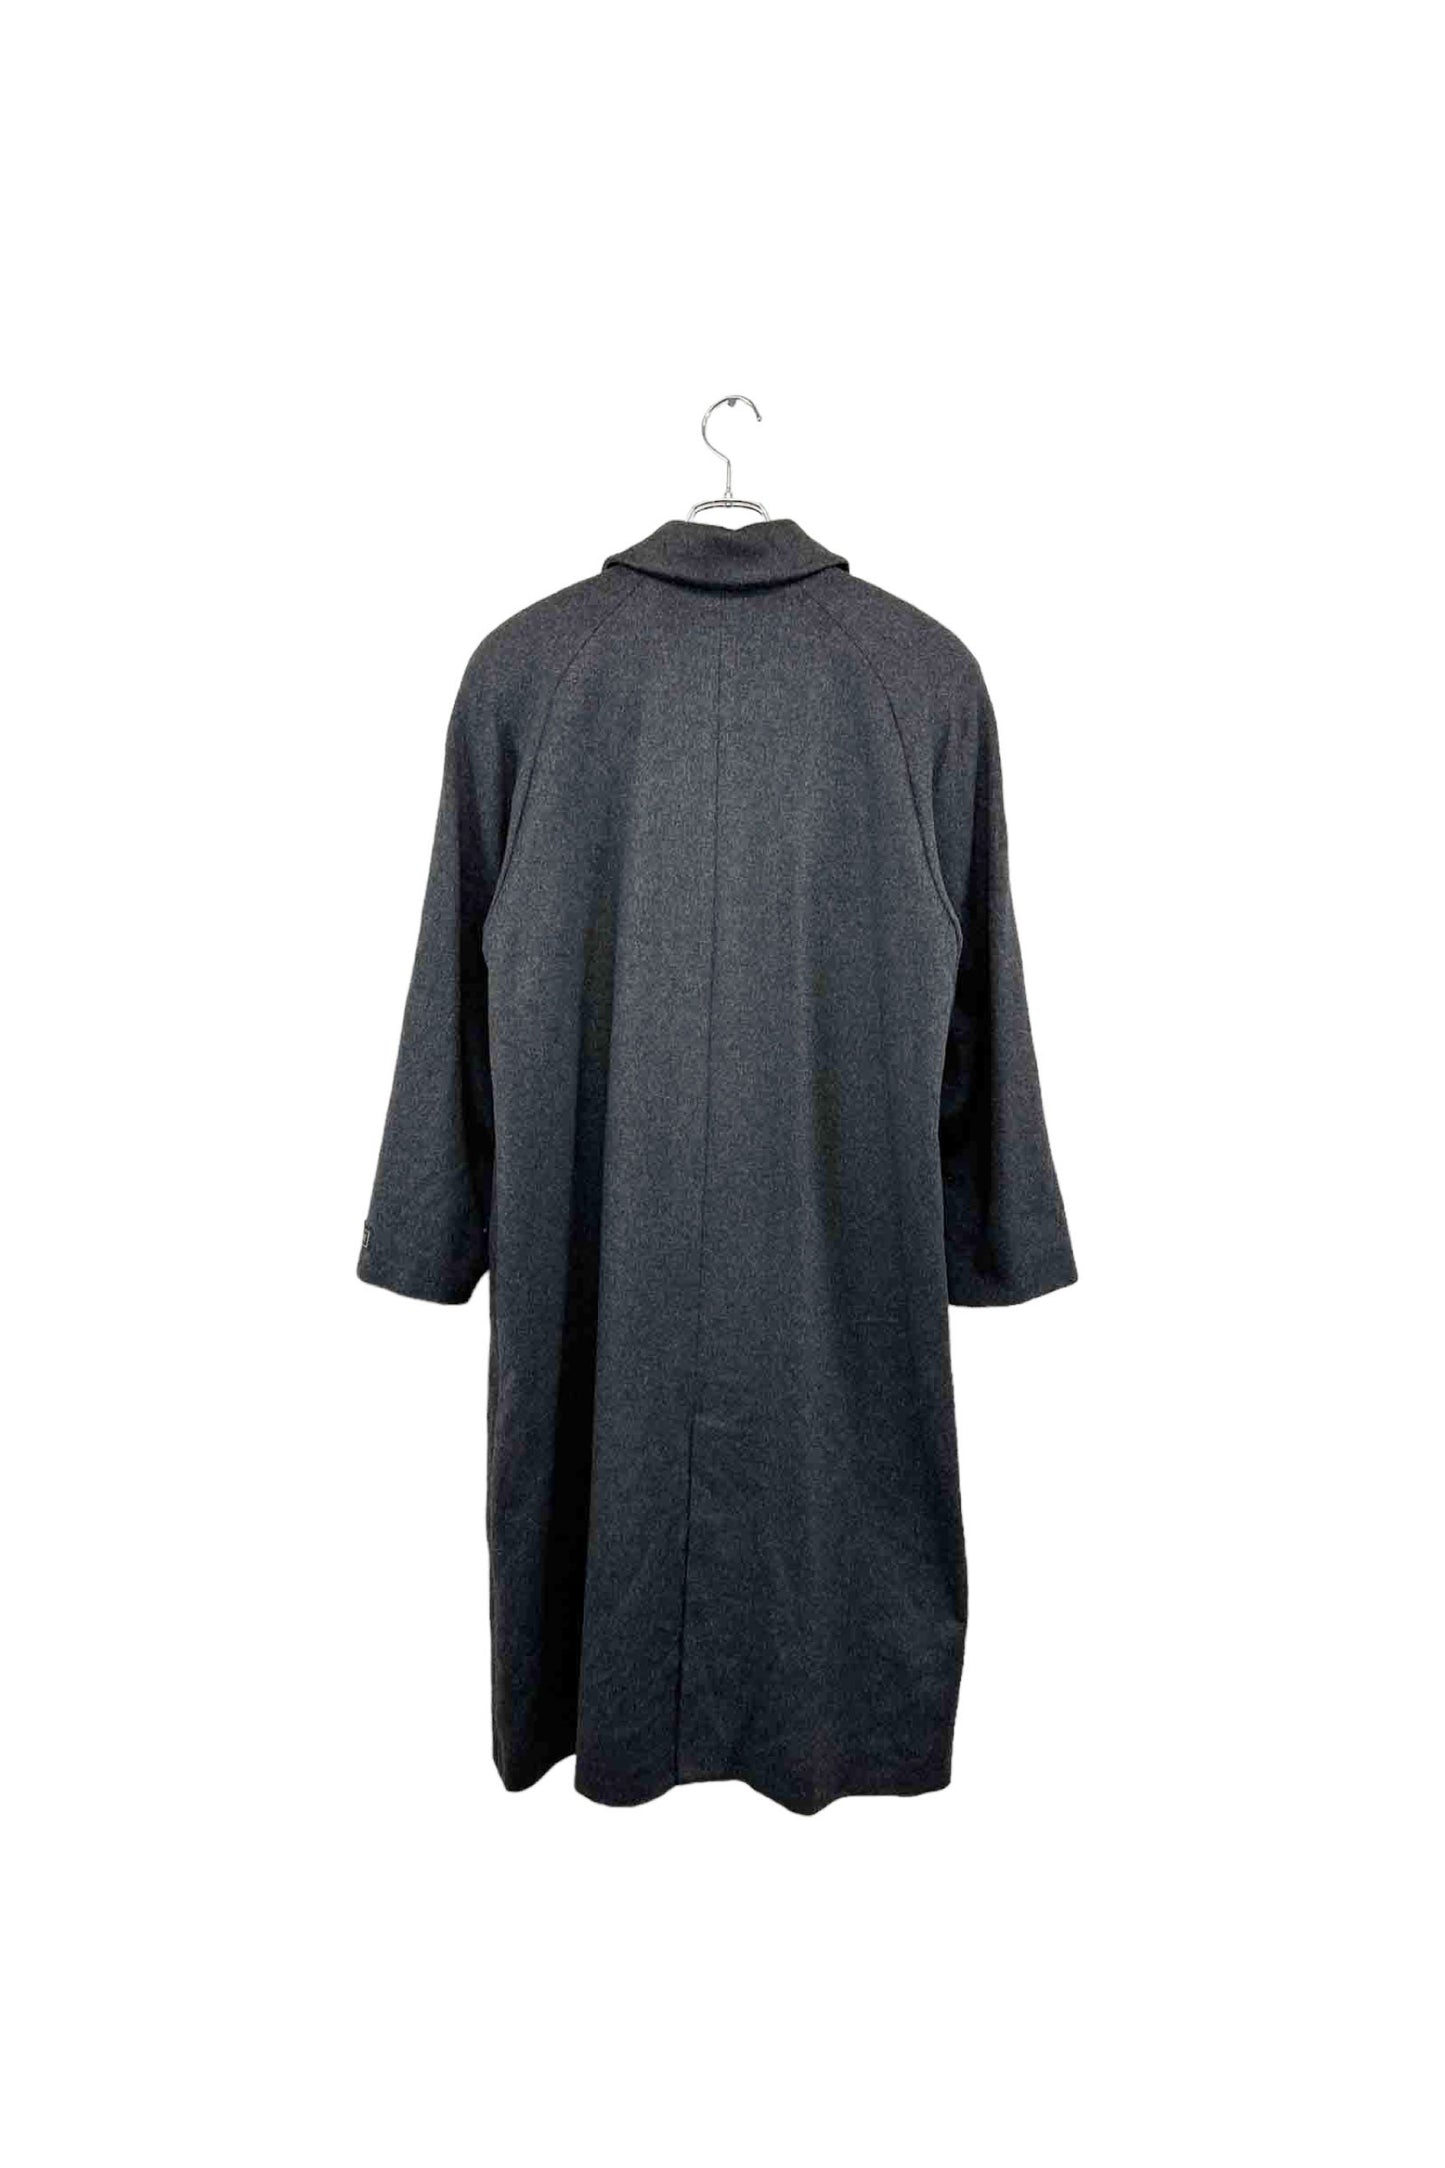 BELTA BUONO cashmere coat